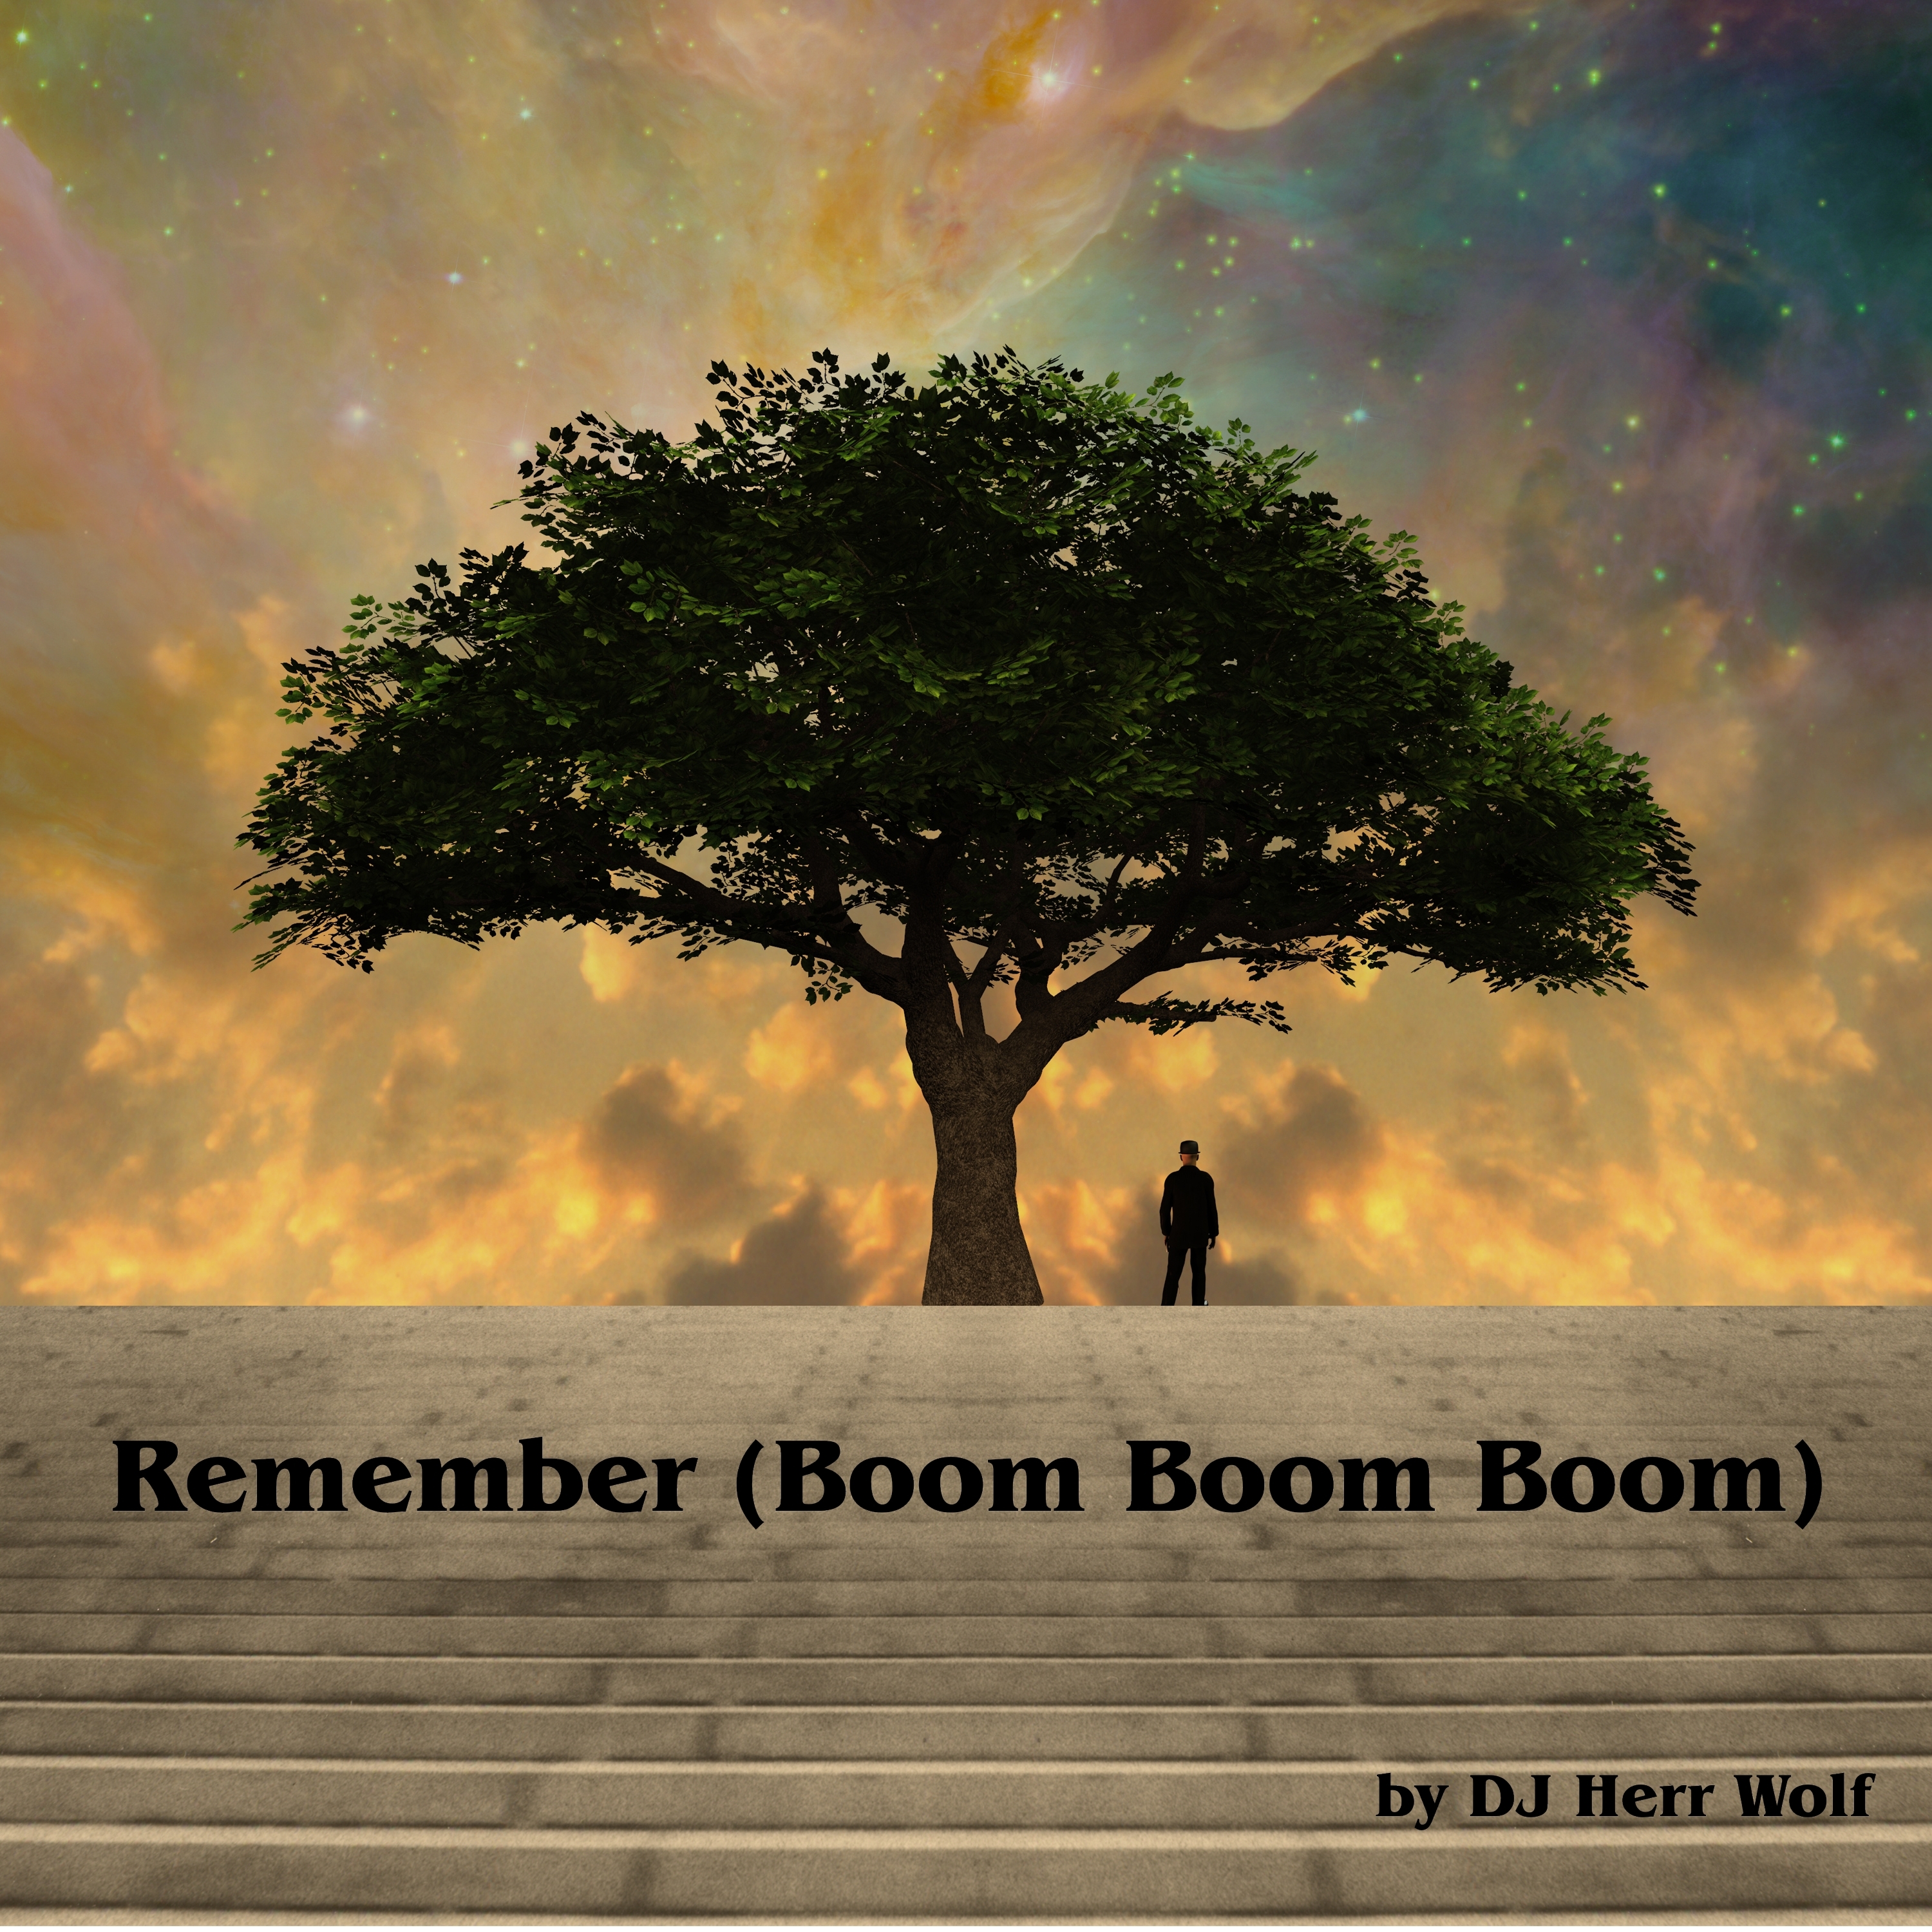 DJ Herr Wolf x Lotte BMFee – “Remember (Boom Boom Boom)”